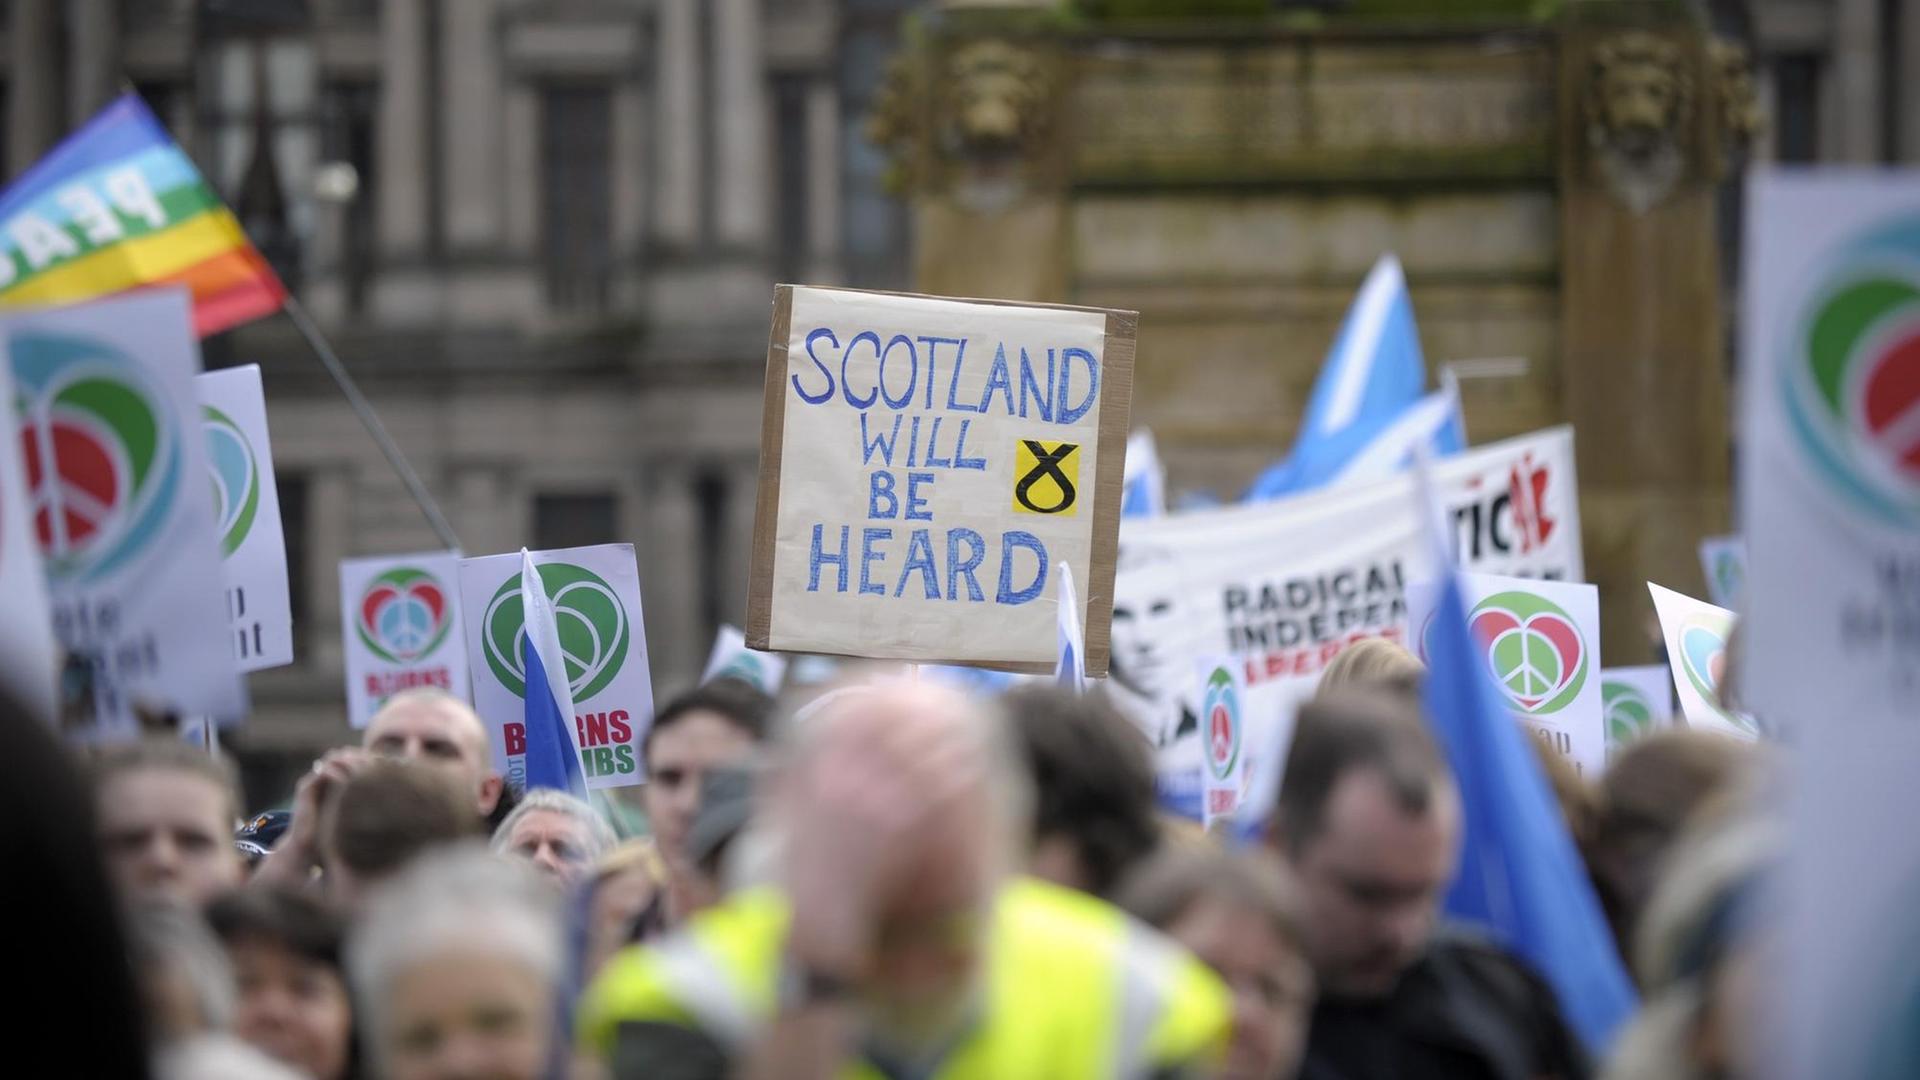 Demonstranten halten Plakate hoch, auf einem ist zu lesen: "Scotland will be heard", zu deutsch: Schottland wird erhört werden.